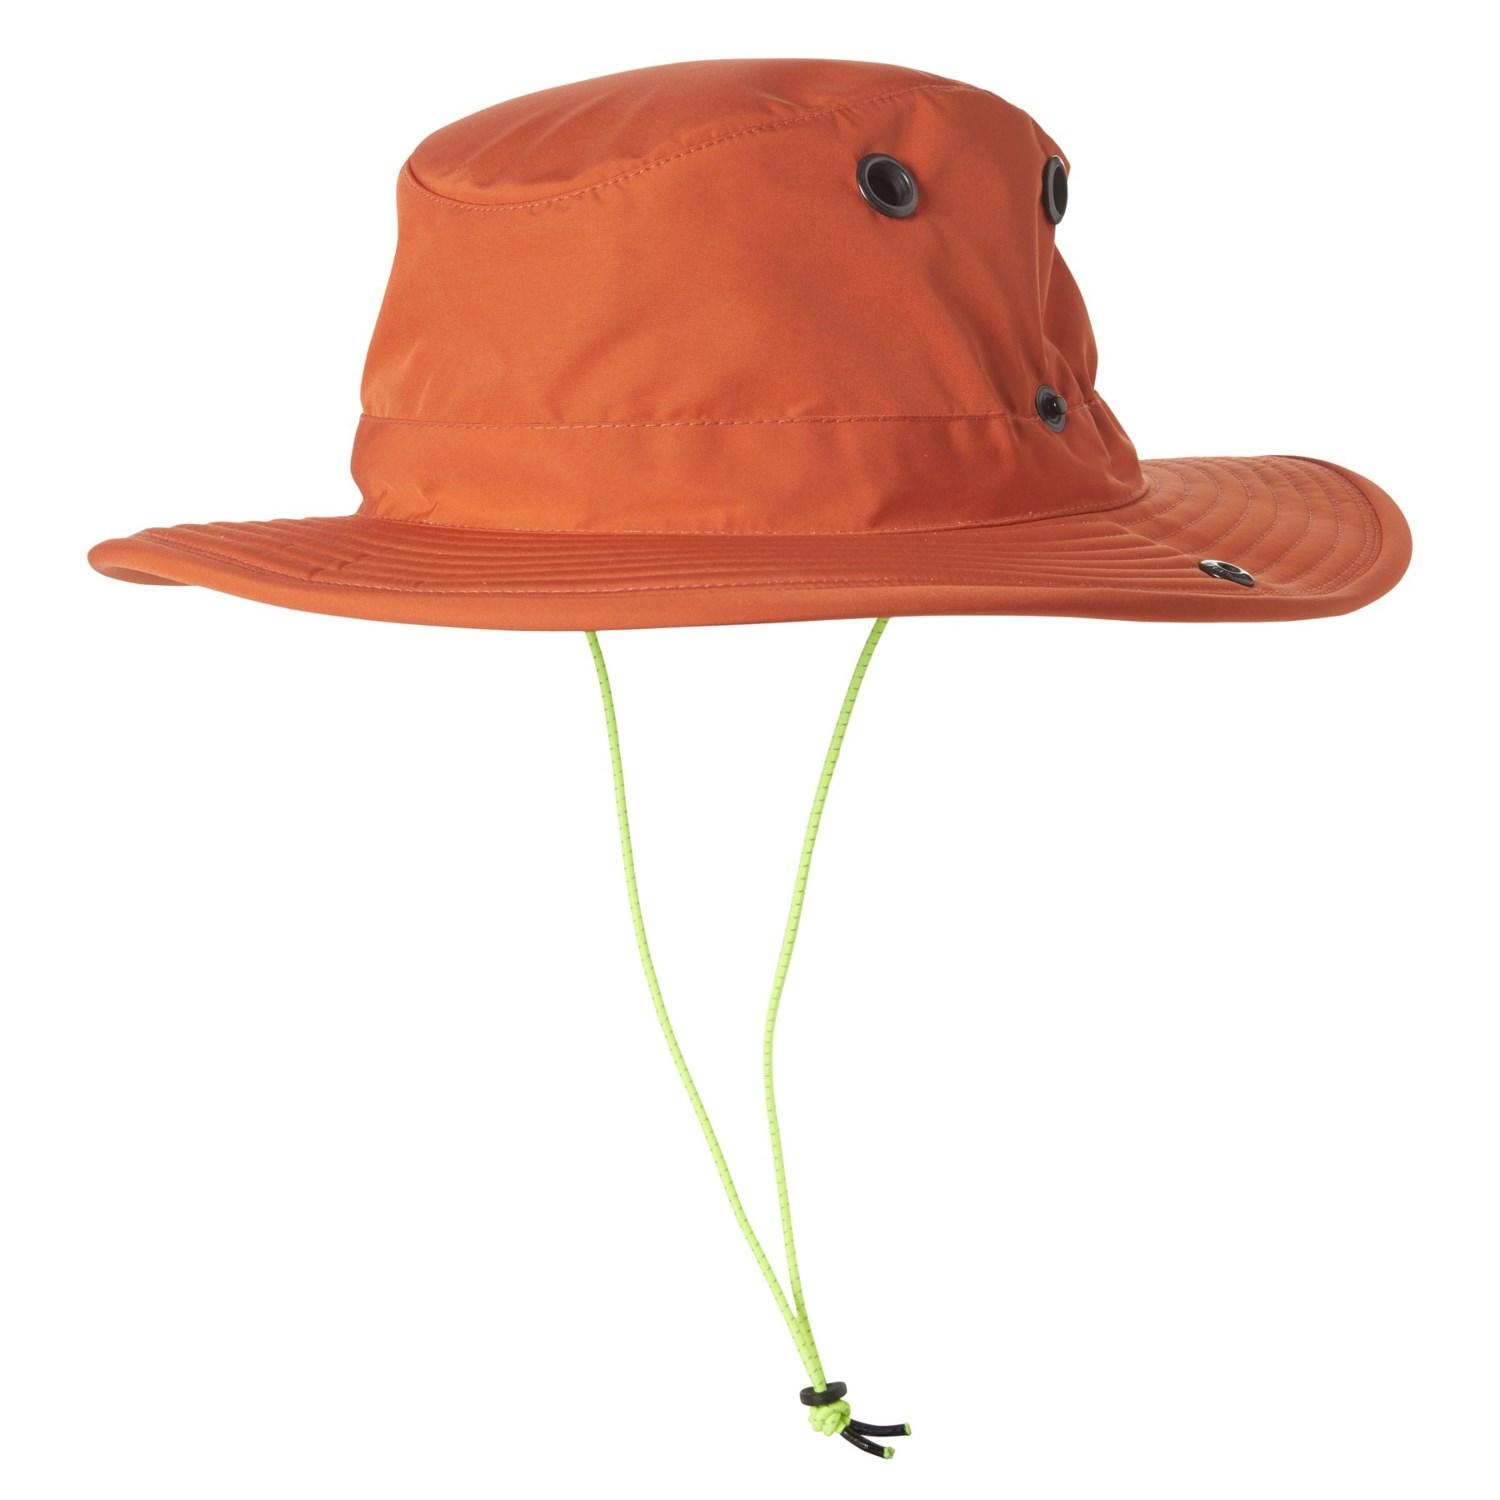 Tilley Synthetic Paddler?s Hat in Orange for Men - Lyst